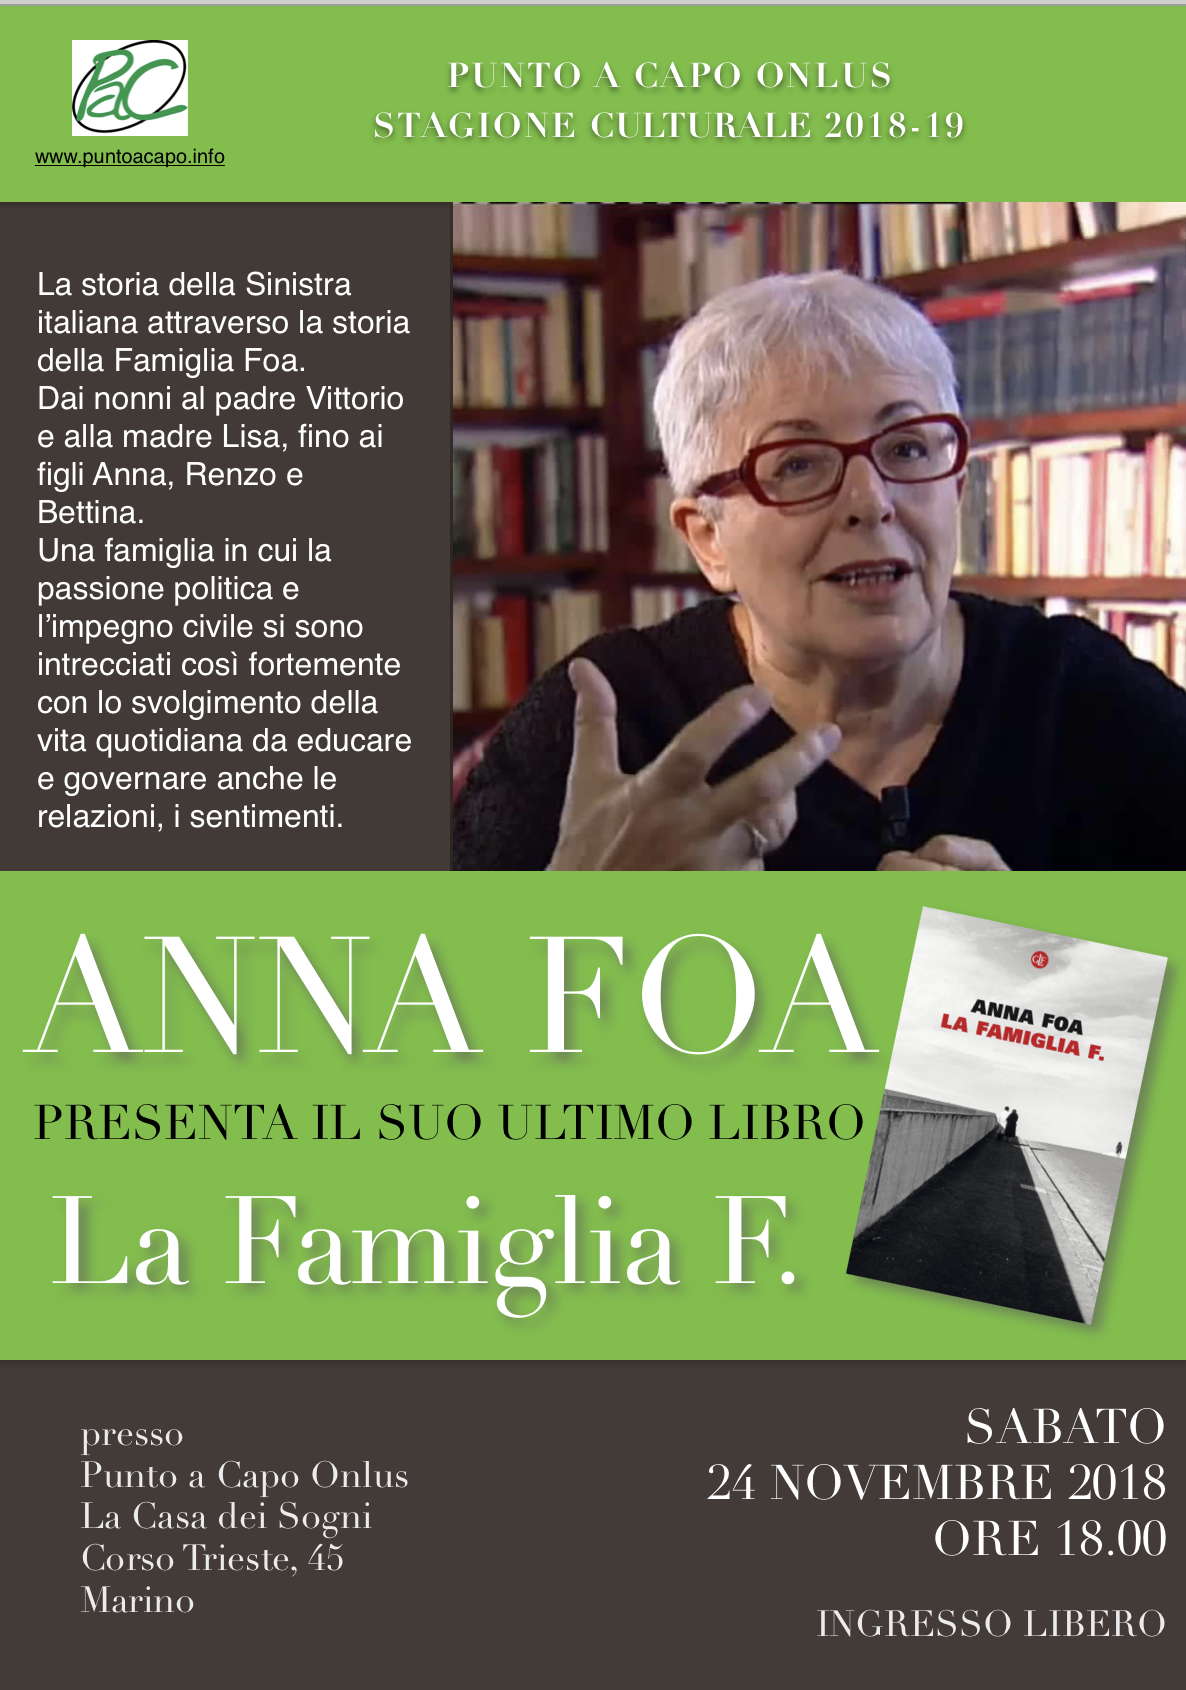 Marino: Anna Foa, storica e scrittrice, presenta a Punto a Capo Onlus il suo libro ‘La Famiglia F.’ il 24 novembre 2018